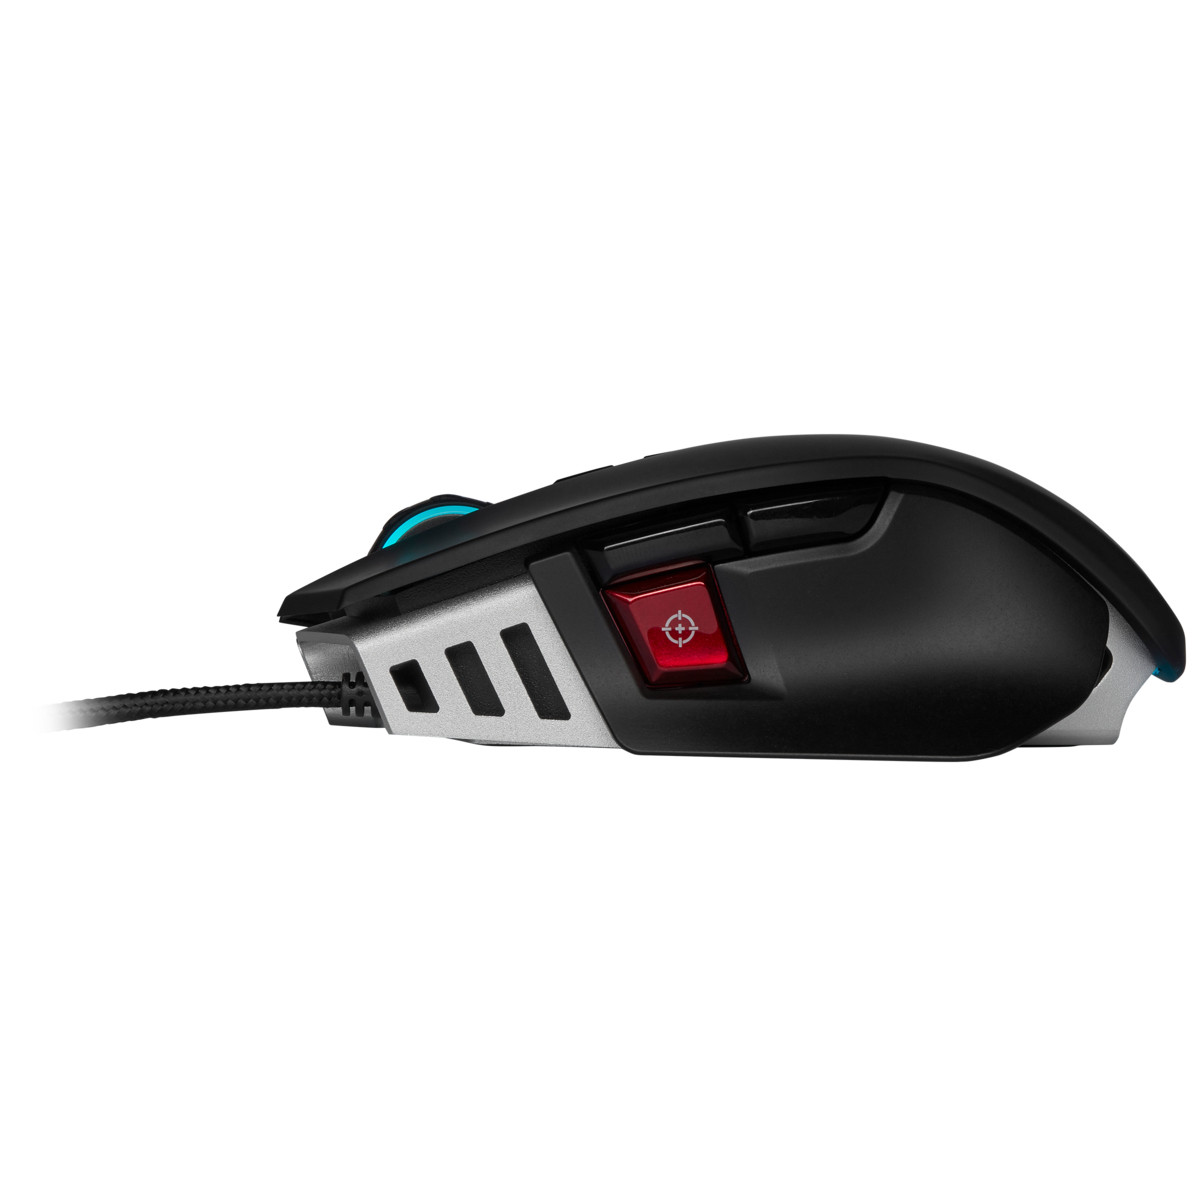 Corsair M65 Gaming Mouse 18000 ELITE RGB DPI Refurbished